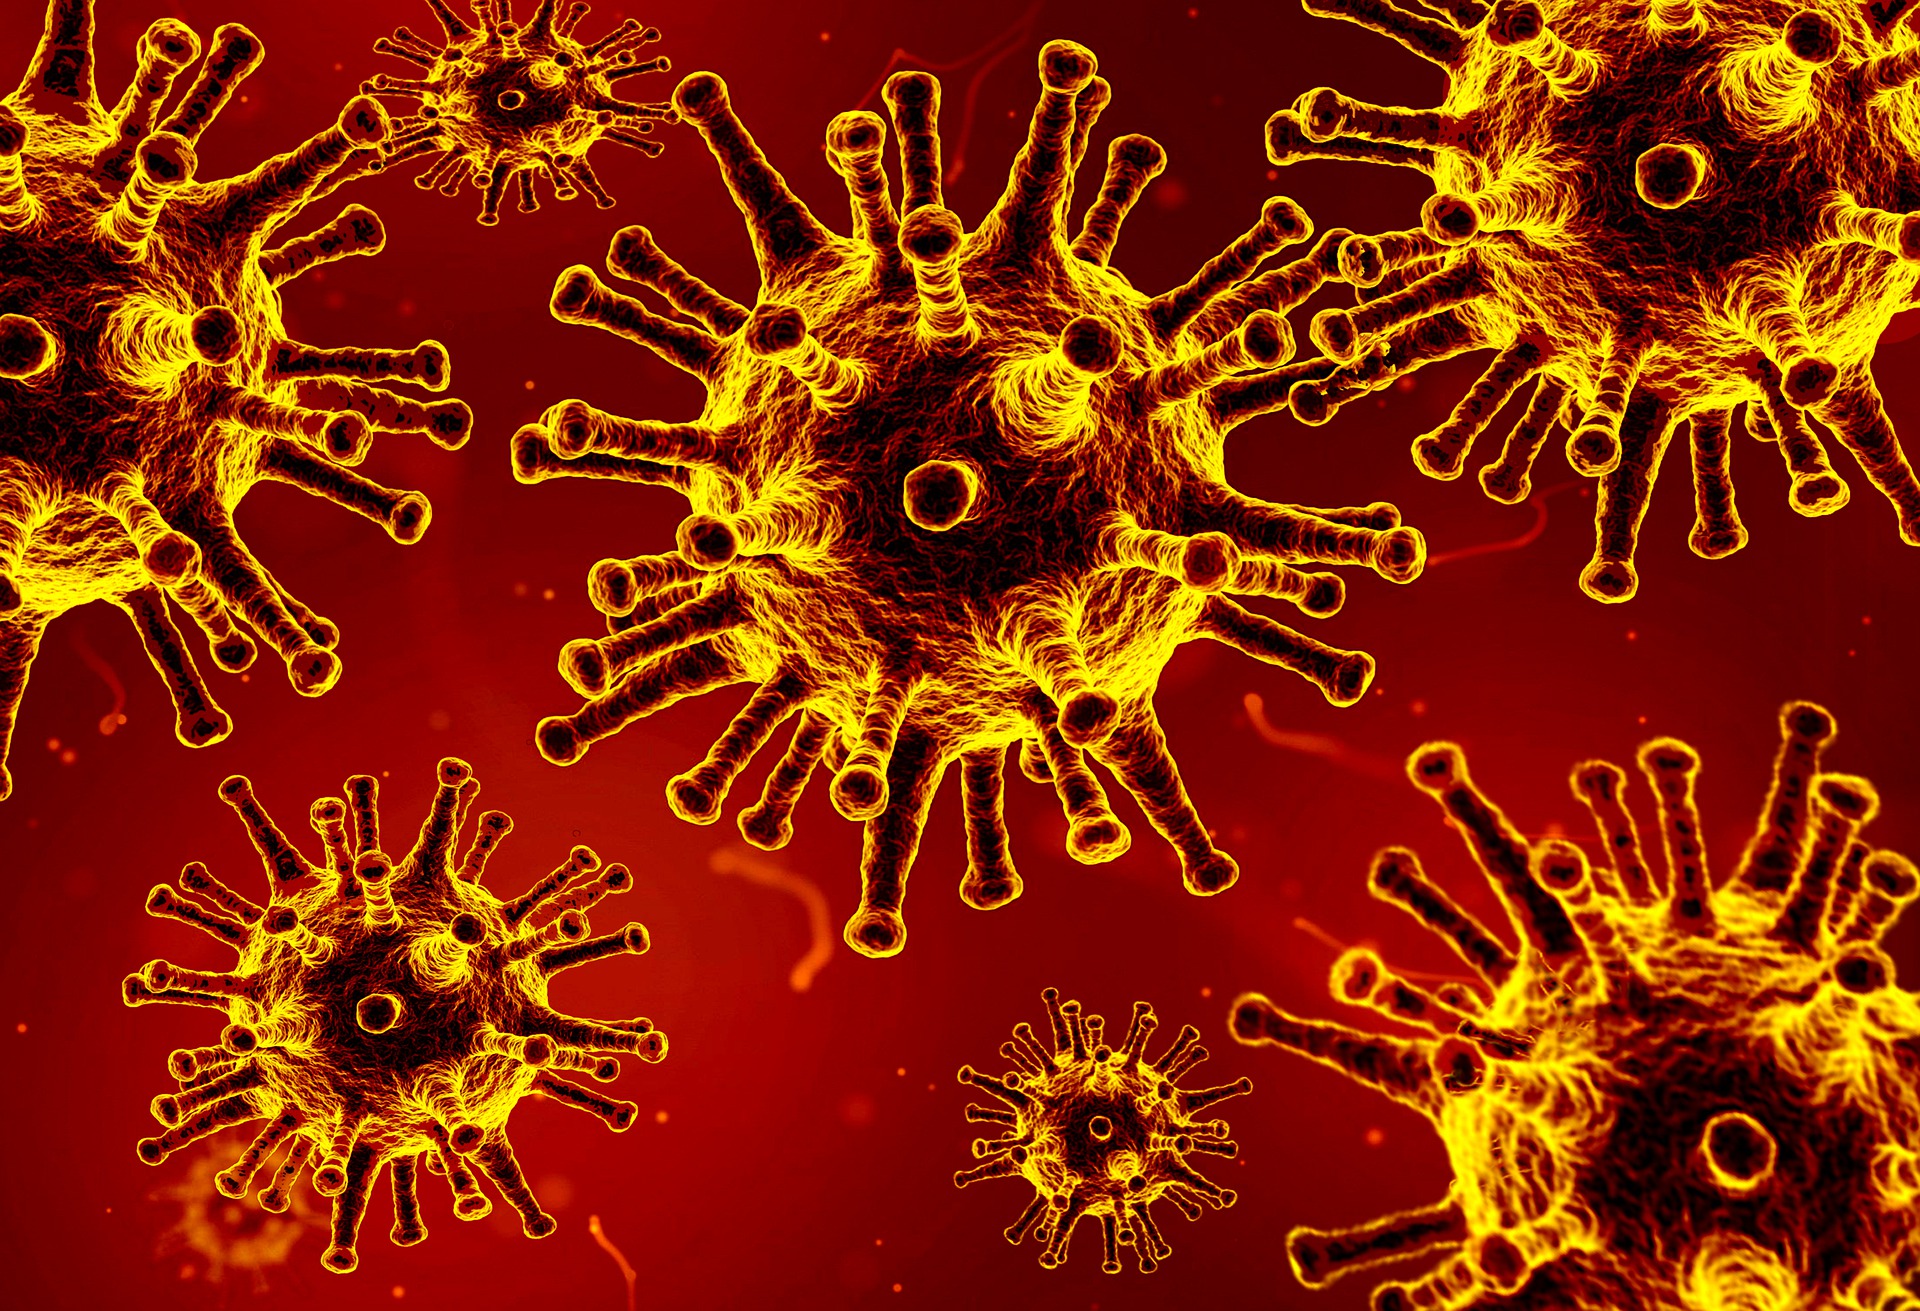 Czy ozonowanie pomaga w walce z koronawirusem?